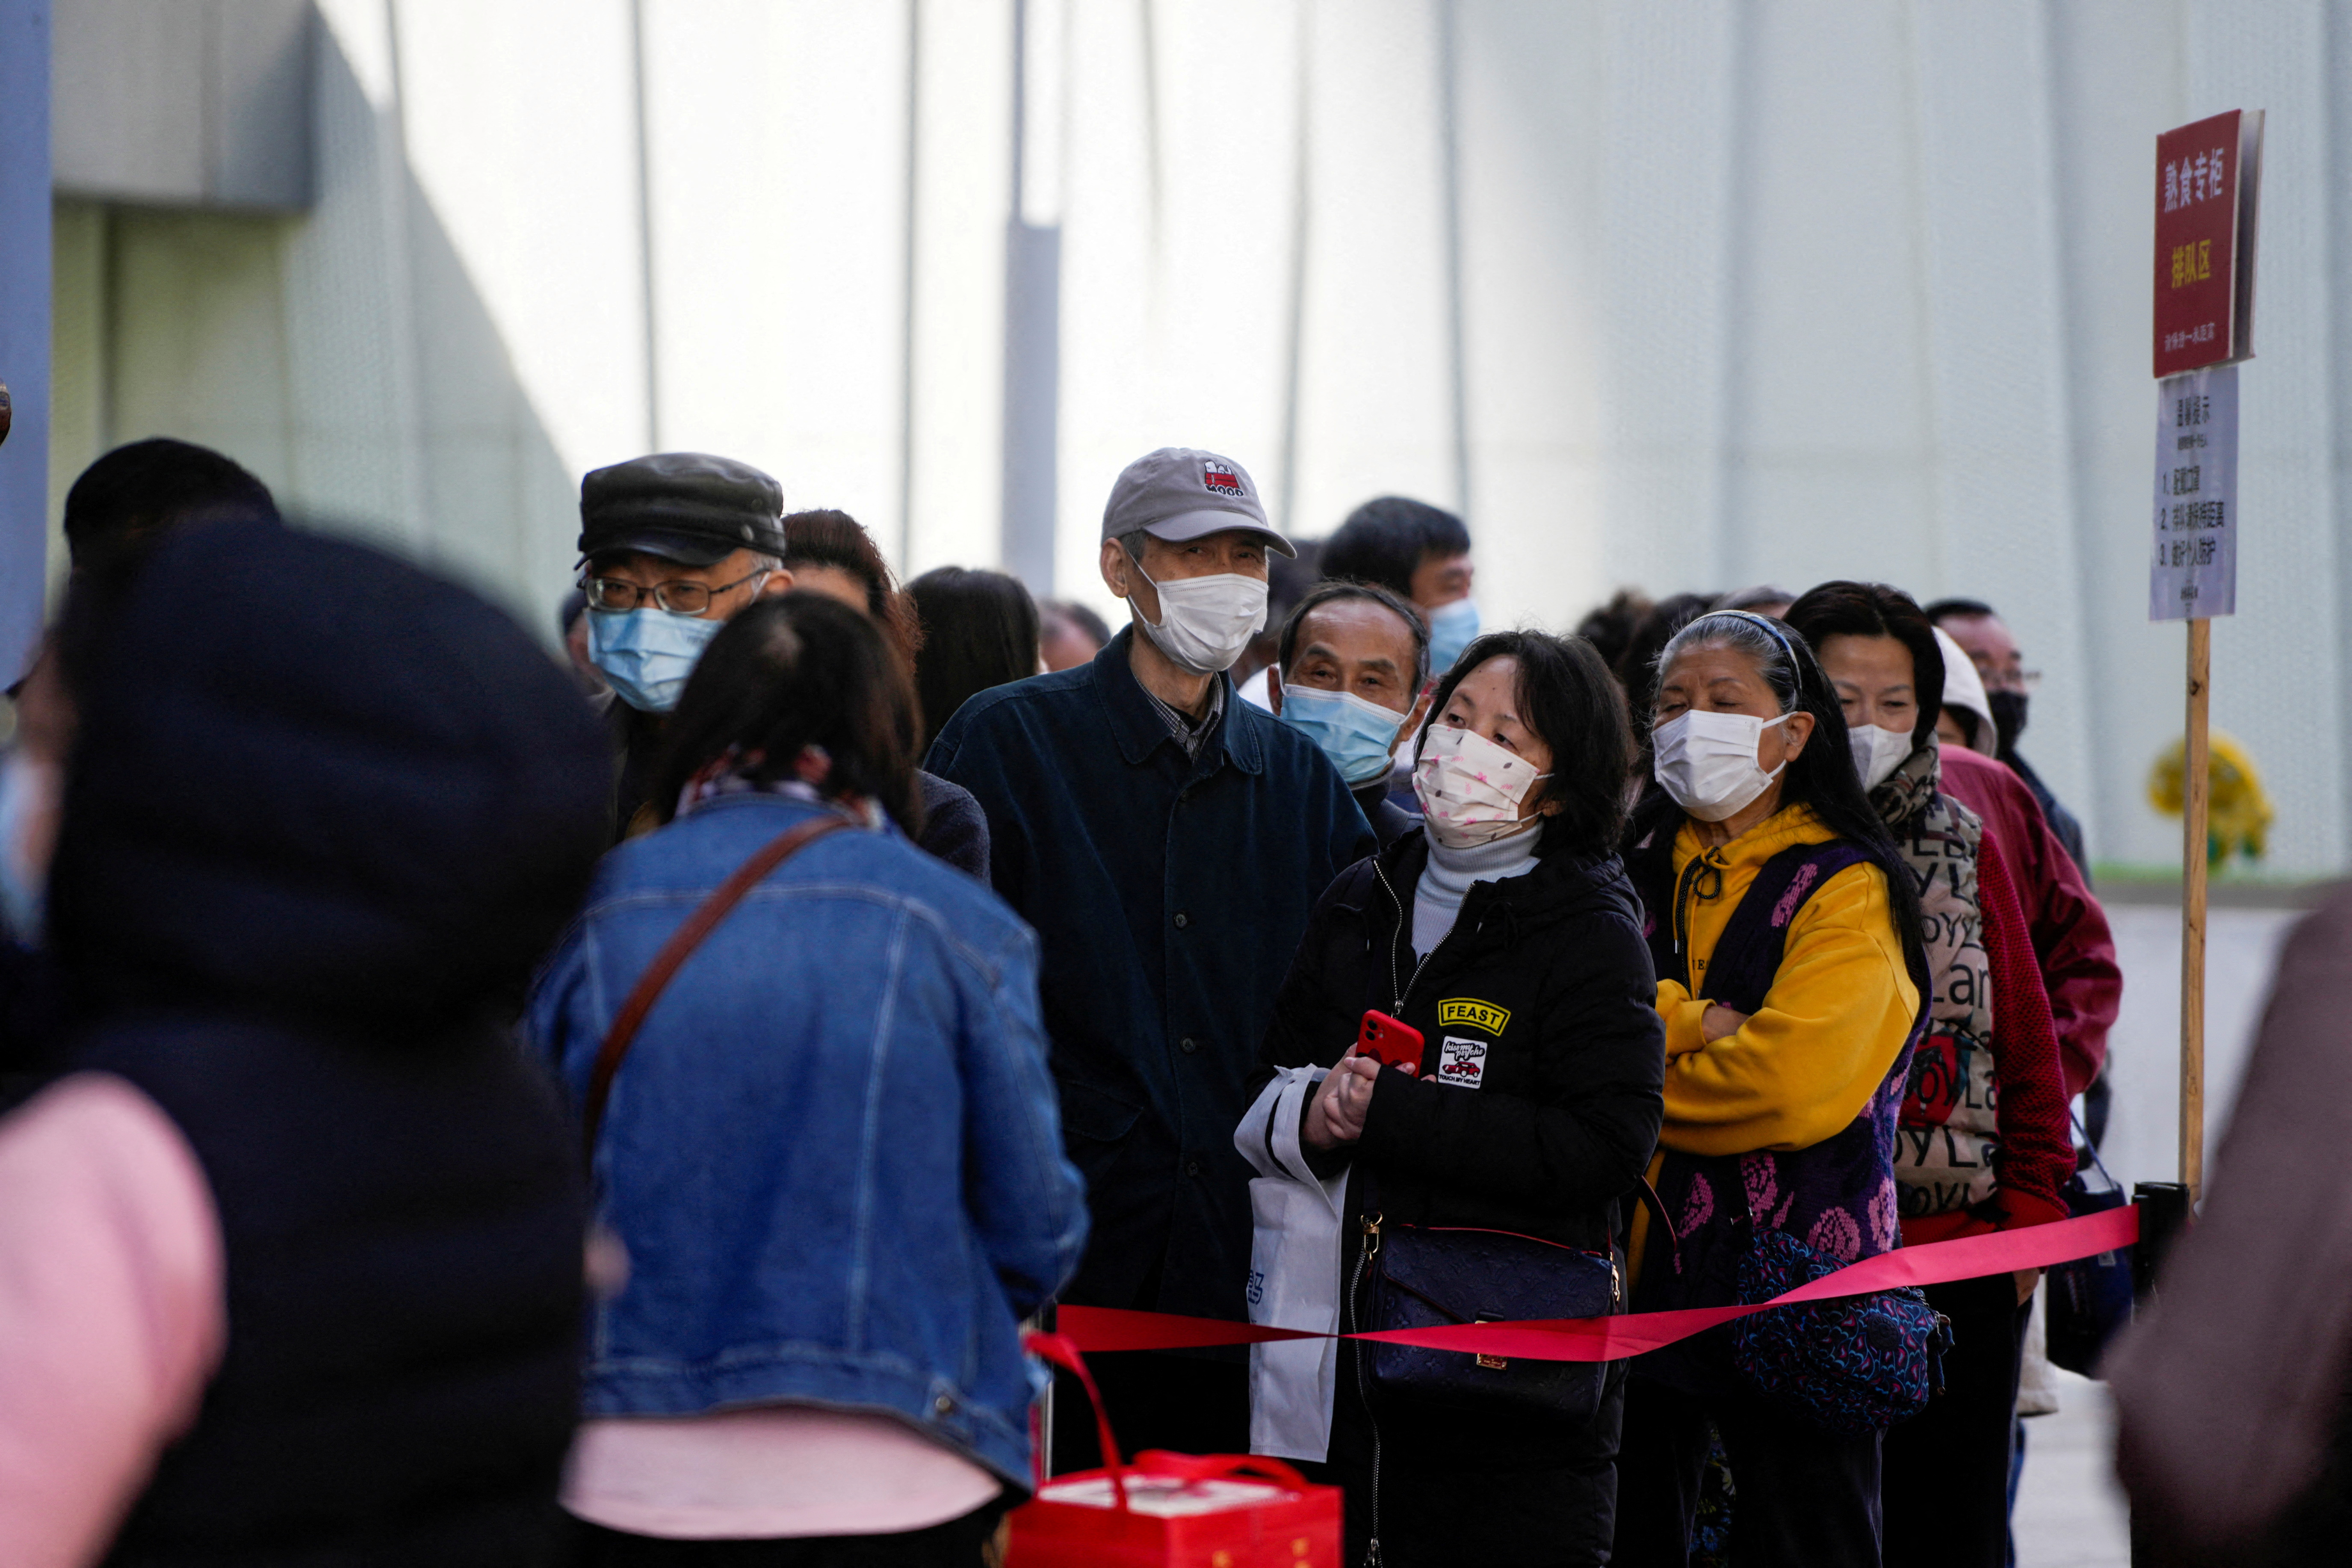 FOTO DE ARCHIVO: La gente hace fila para comprar alimentos en una zona comercial principal tras el brote de la enfermedad por coronavirus (COVID-19) en Shanghái, China. REUTERS/Aly Song/Foto de archivo